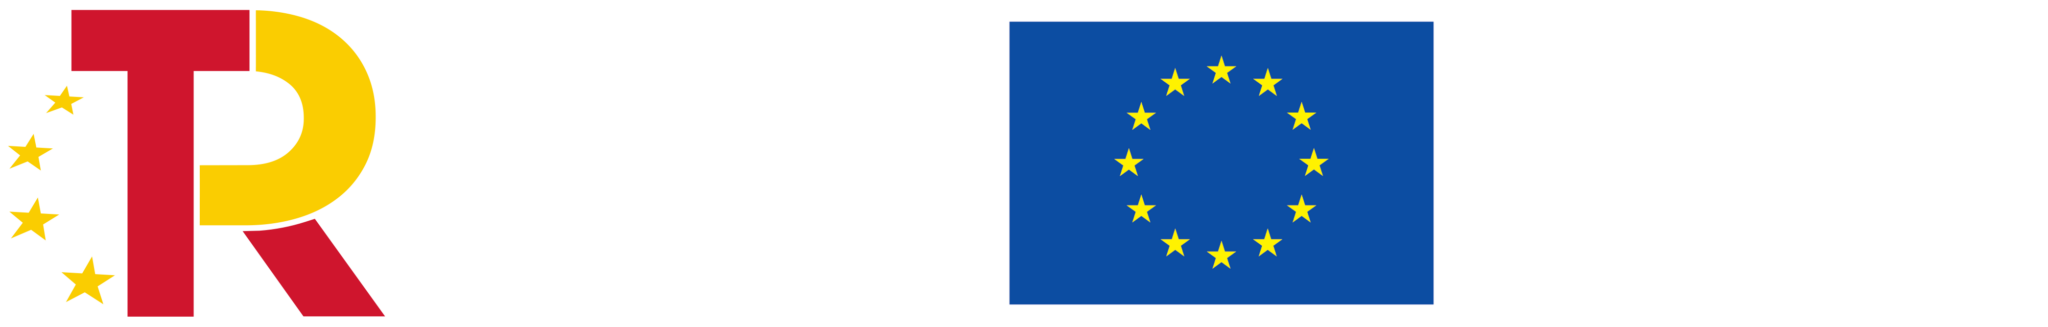 logos-plan-recuperacion-union-europea-2